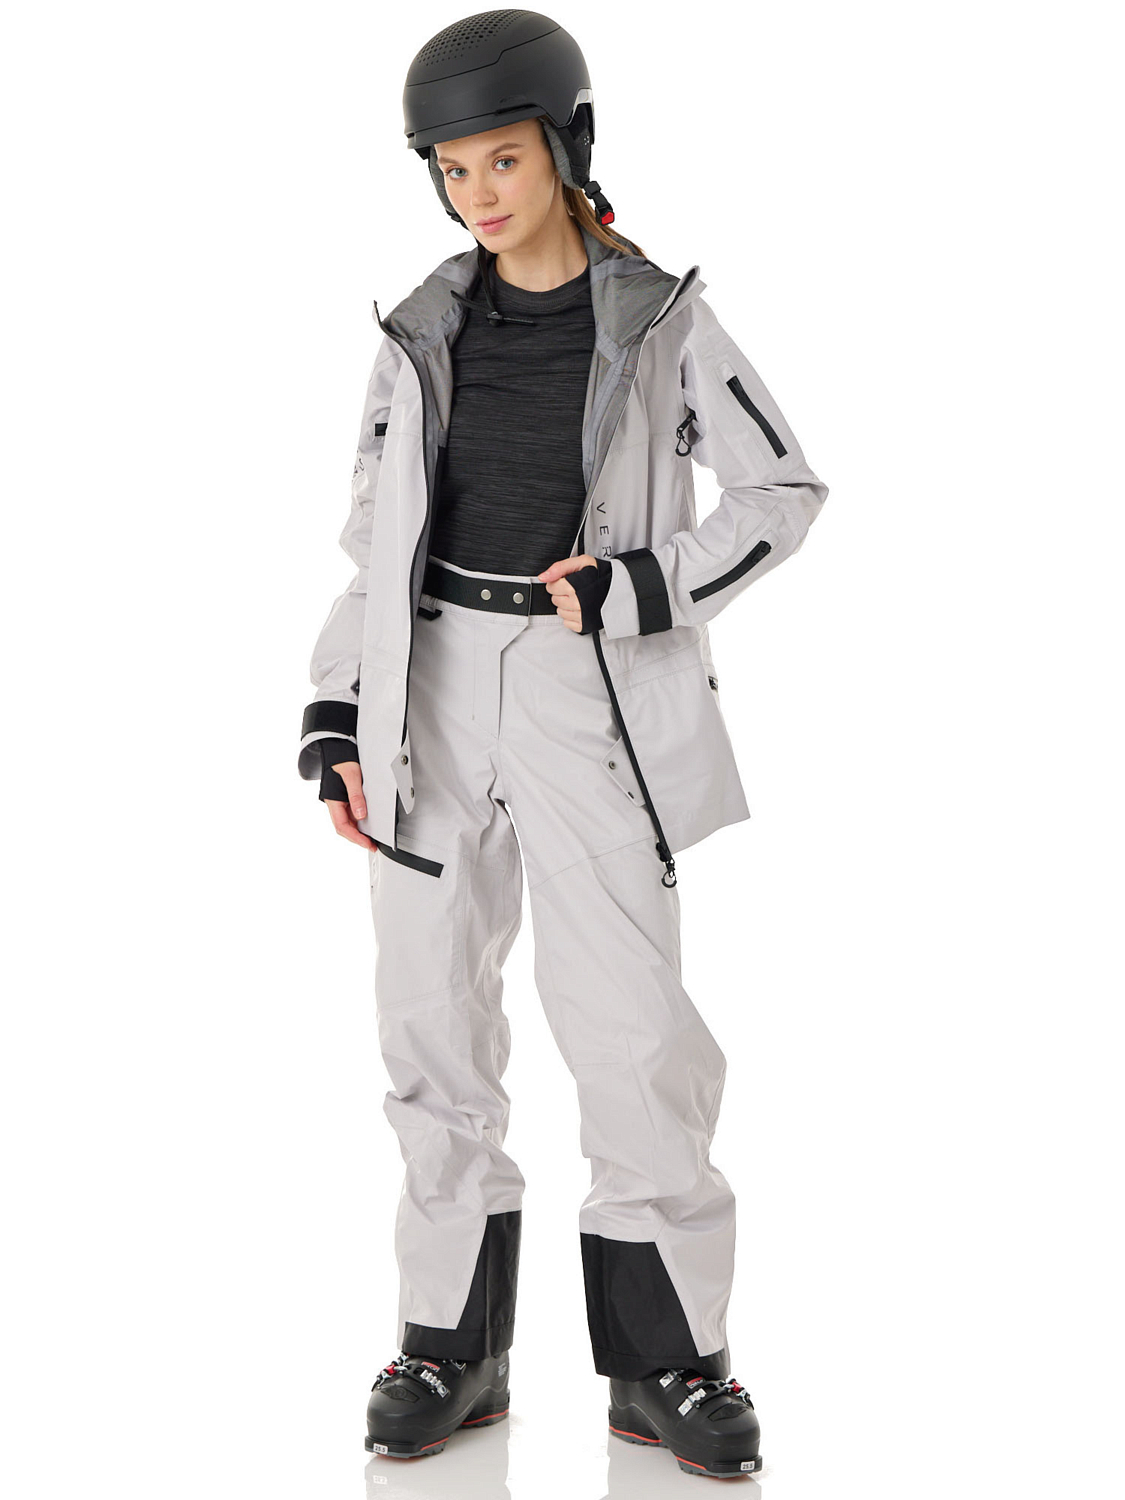 Брюки сноубордические Versta Rider Collection Woman Grey